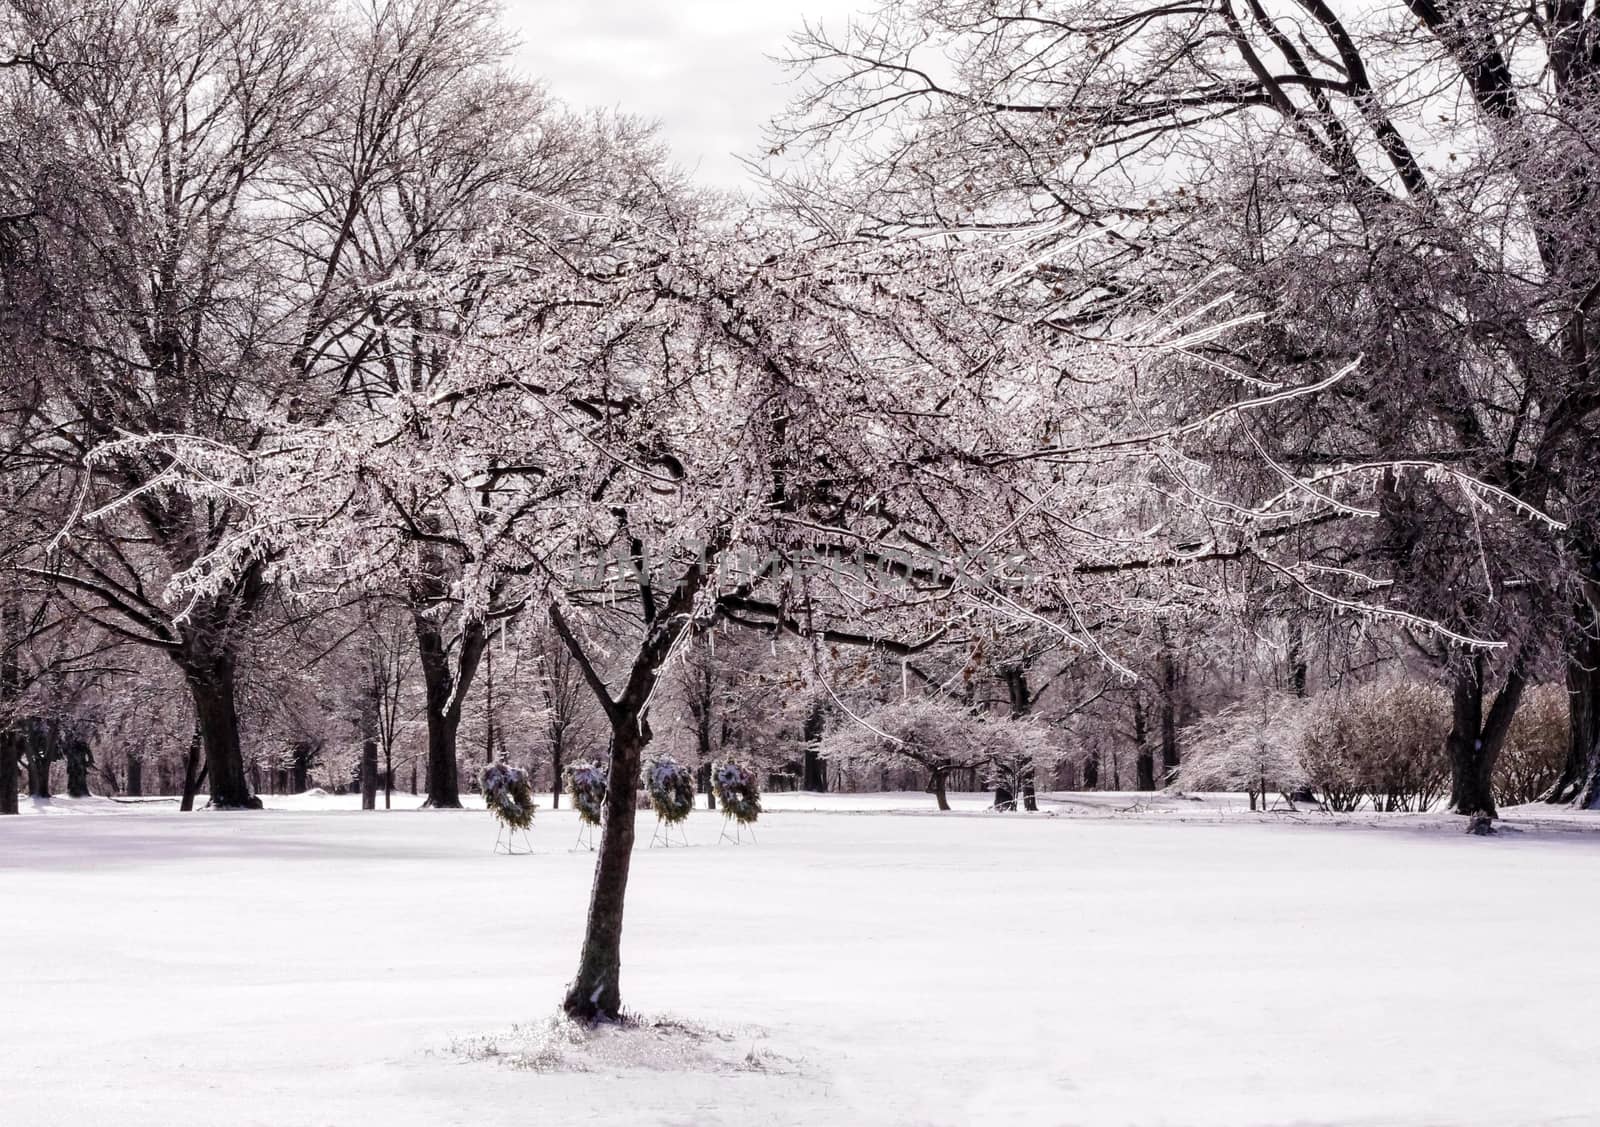 Ice-laden tree in snowy, wintry landscape